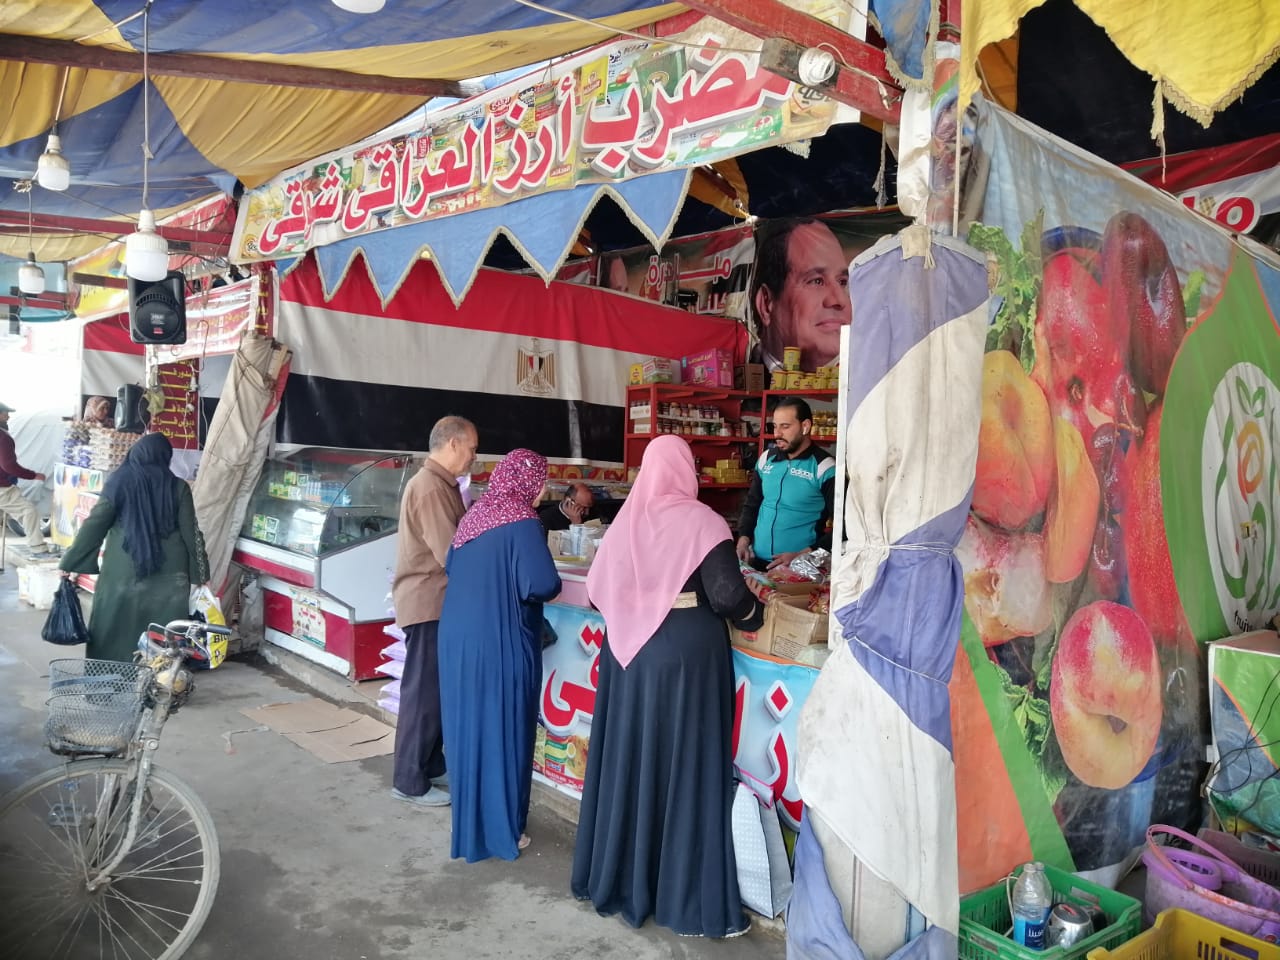 اسواق تحيا مصر للخضر والفاكهة بالغربية (7)